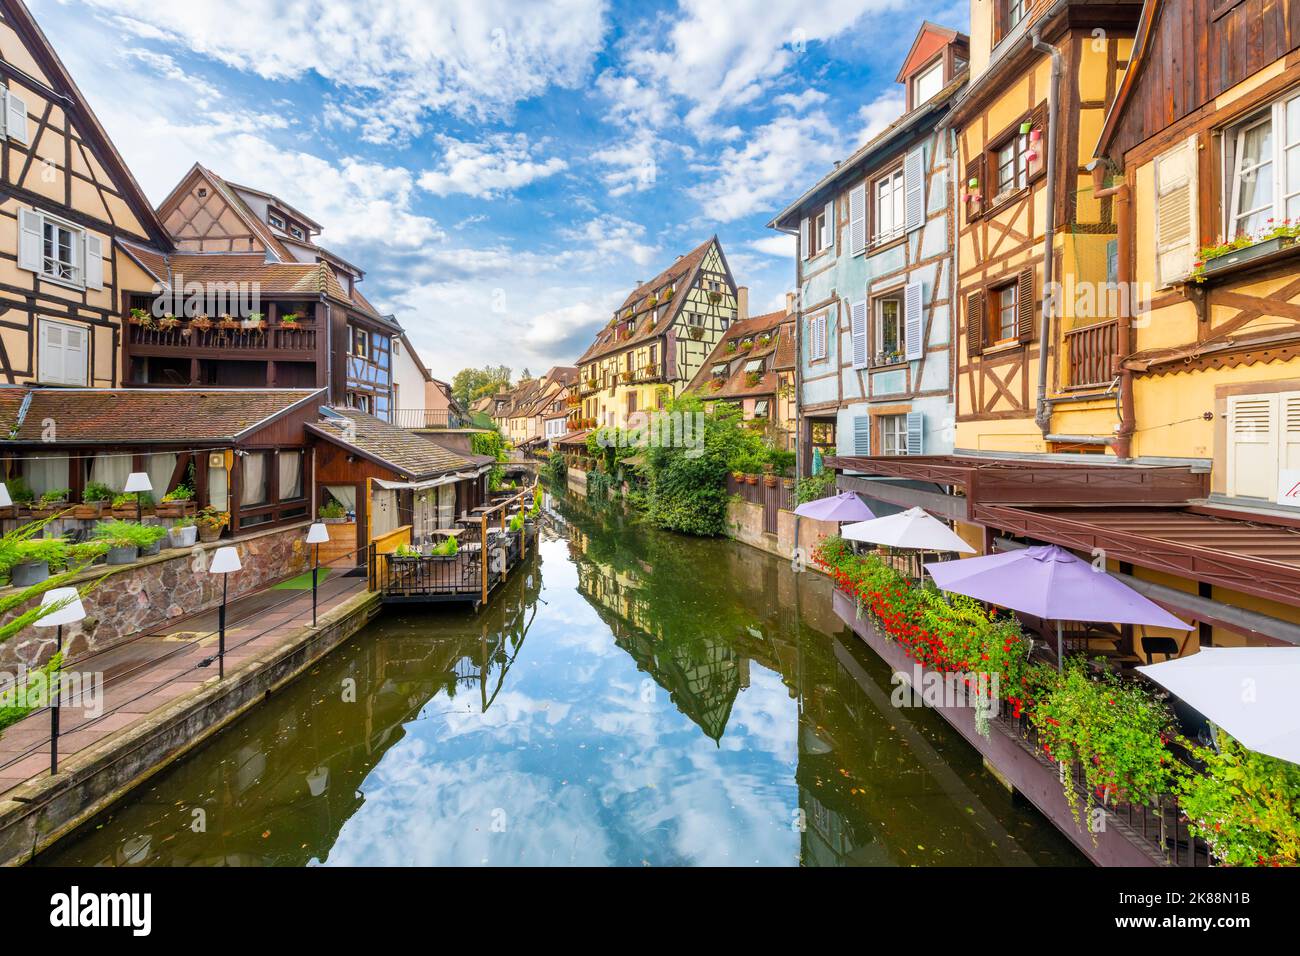 Des bâtiments à colombages colorés et des cafés en bord de mer sur la rivière Lauch dans le quartier médiéval historique de la petite Venise de Colmar, en France. Banque D'Images